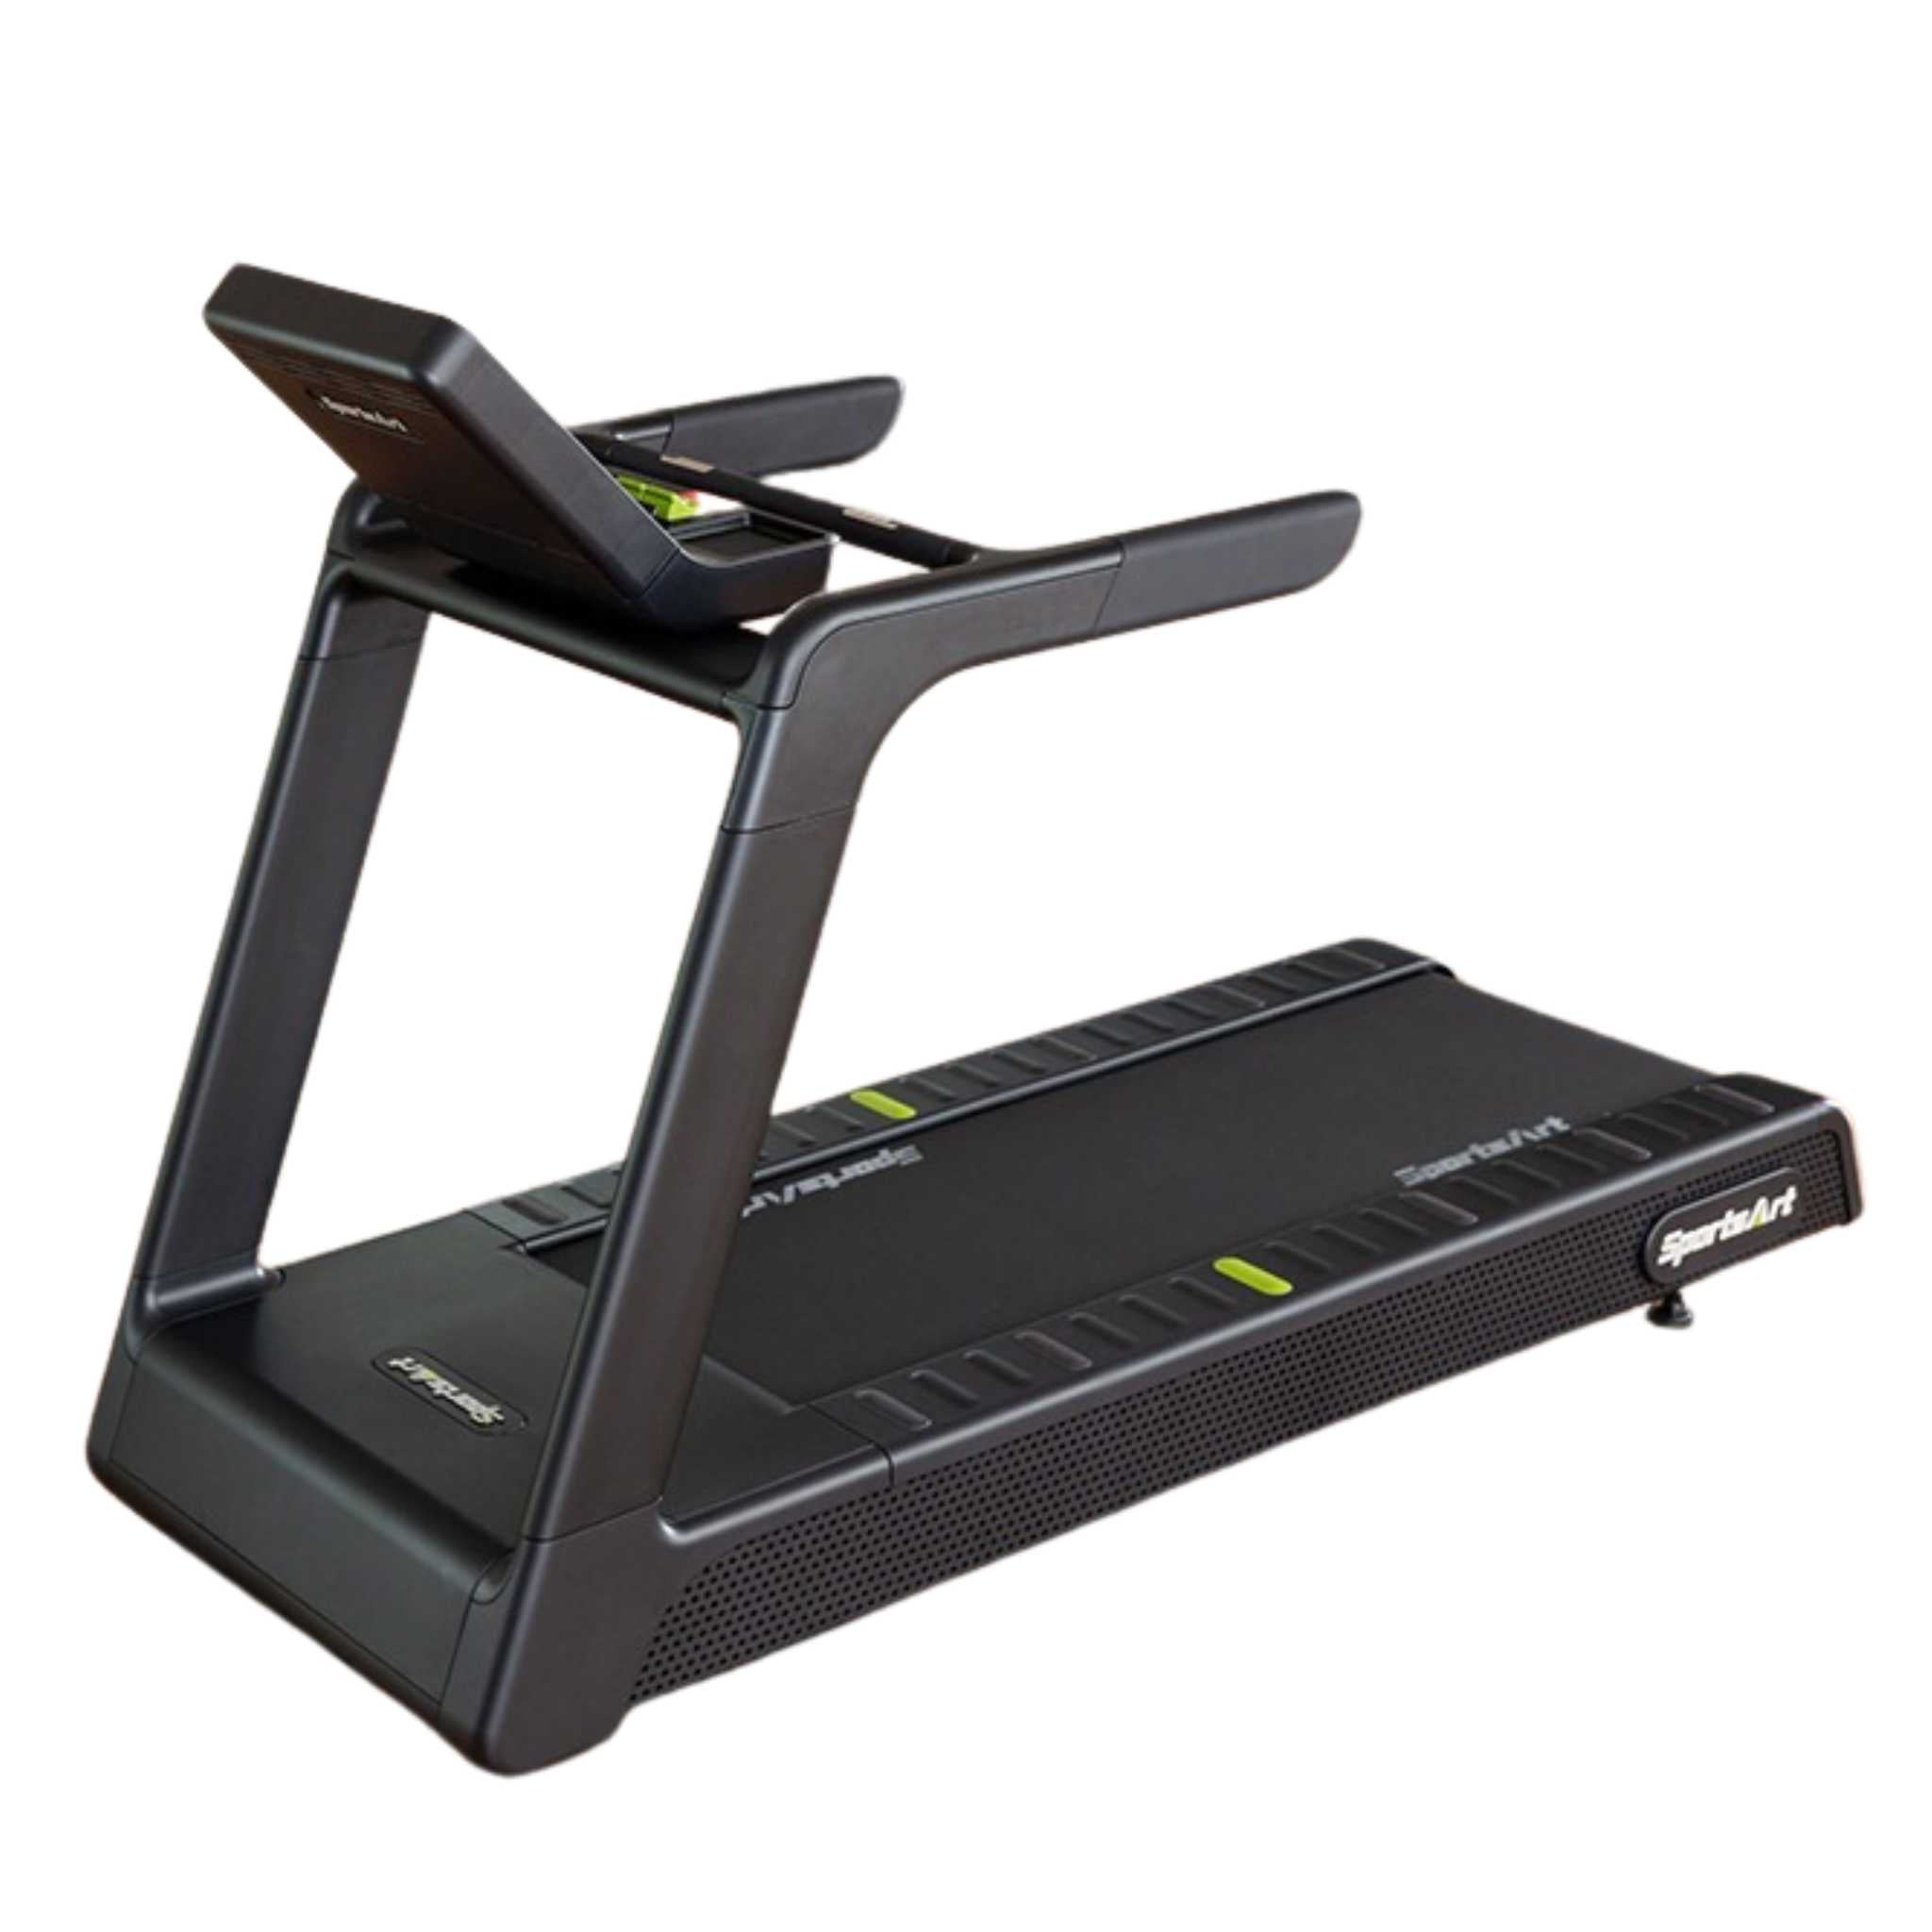 SportsArt T673L Treadmill machine